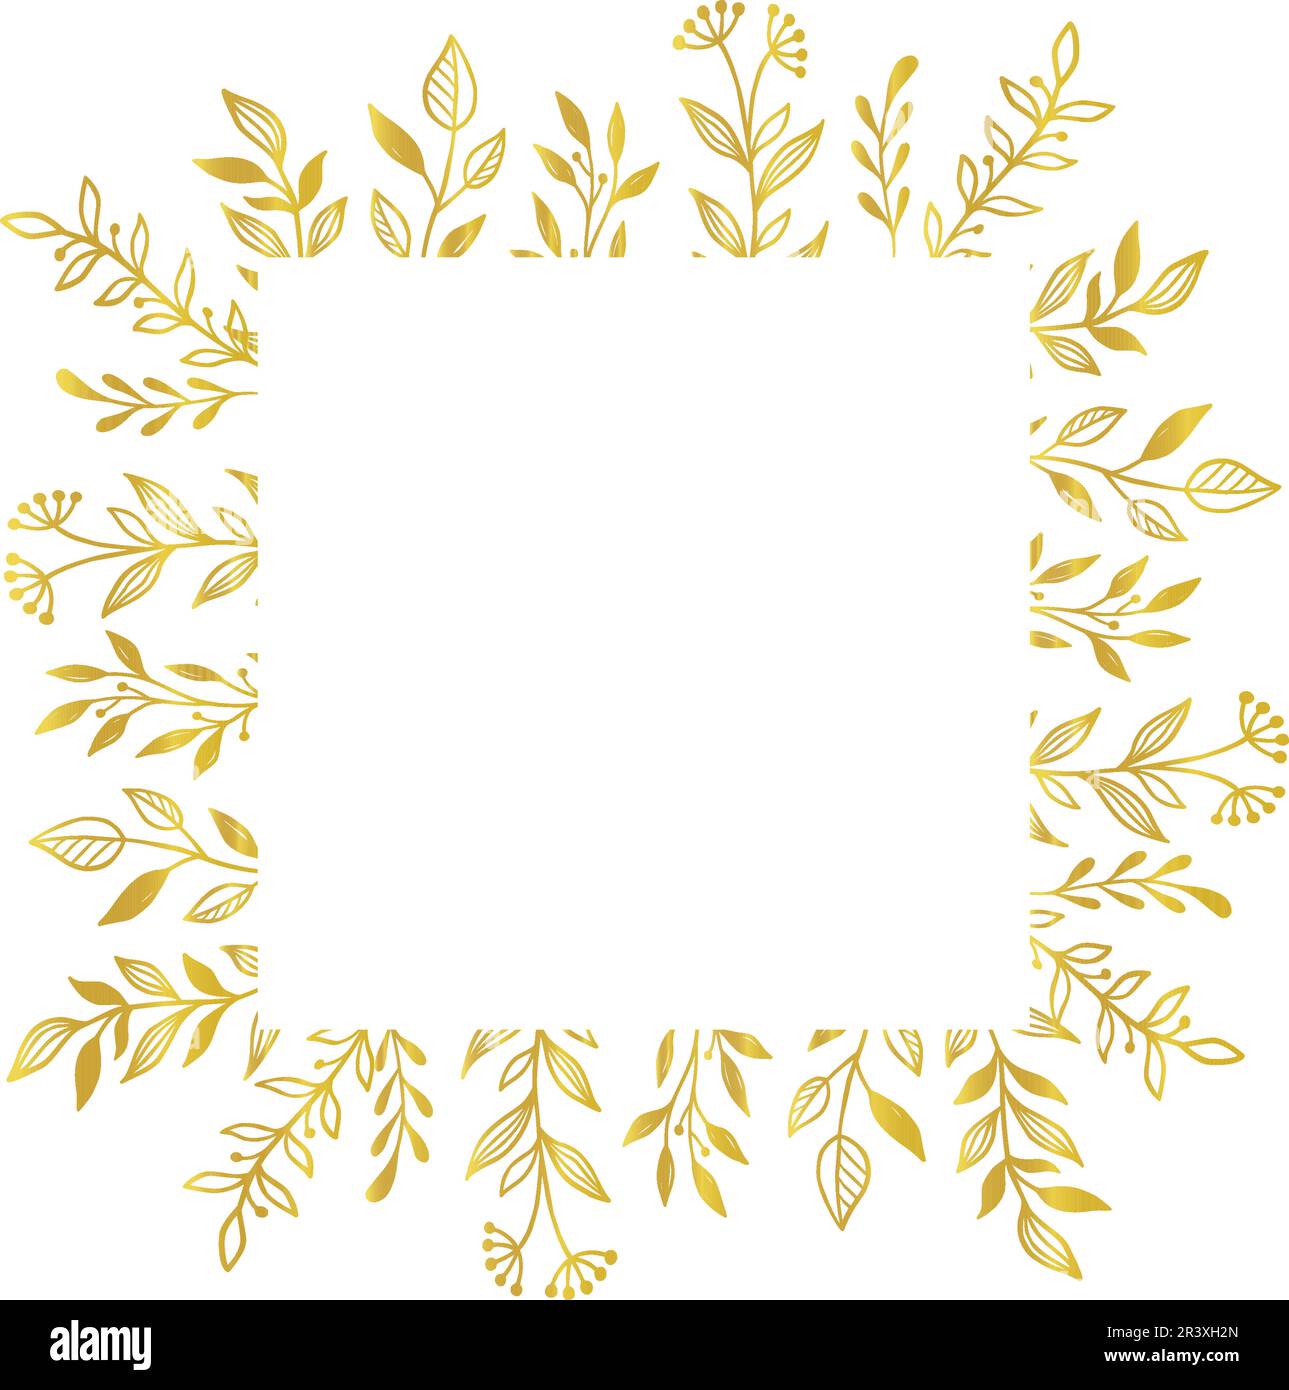 Gold floral square border. Vector golden floral leaf wreath border. Wedding square frame design. Hand drawn rustic flourish elegant rectangle frame. Vector illustration Stock Vector